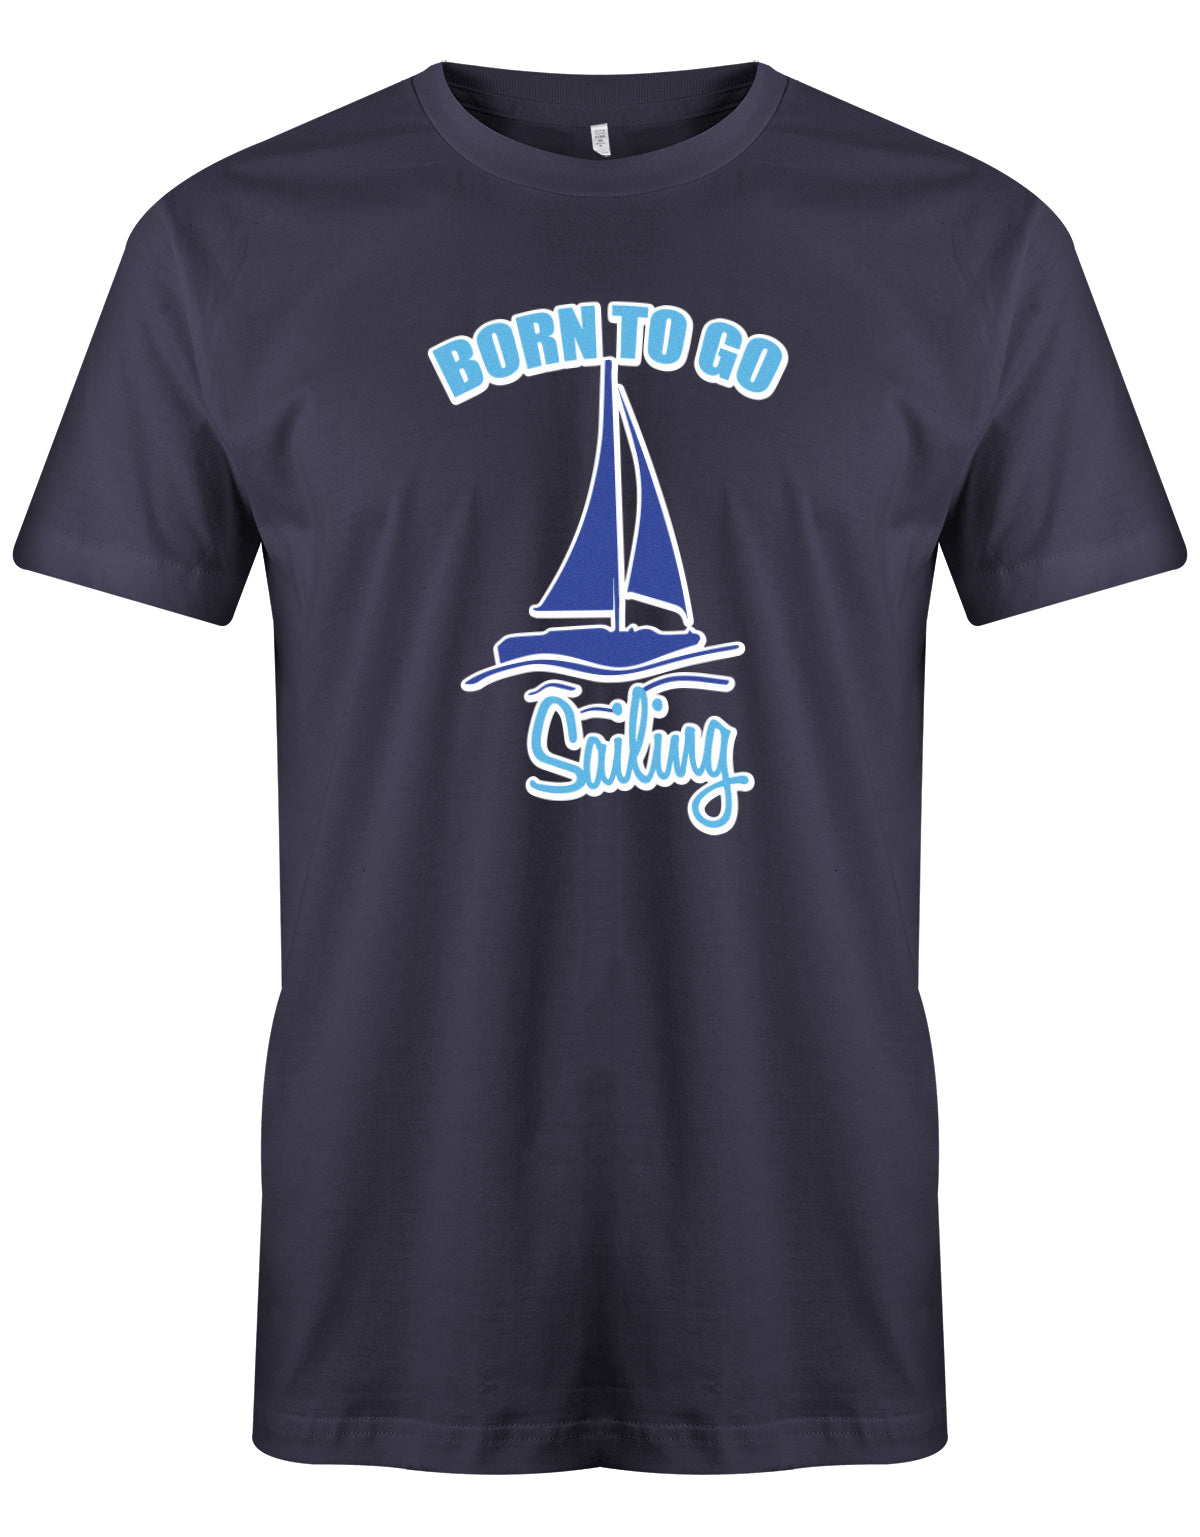 Das Segler t-shirt bedruckt mit "Born to go sailing - geboren um segeln zu gehen". Navy